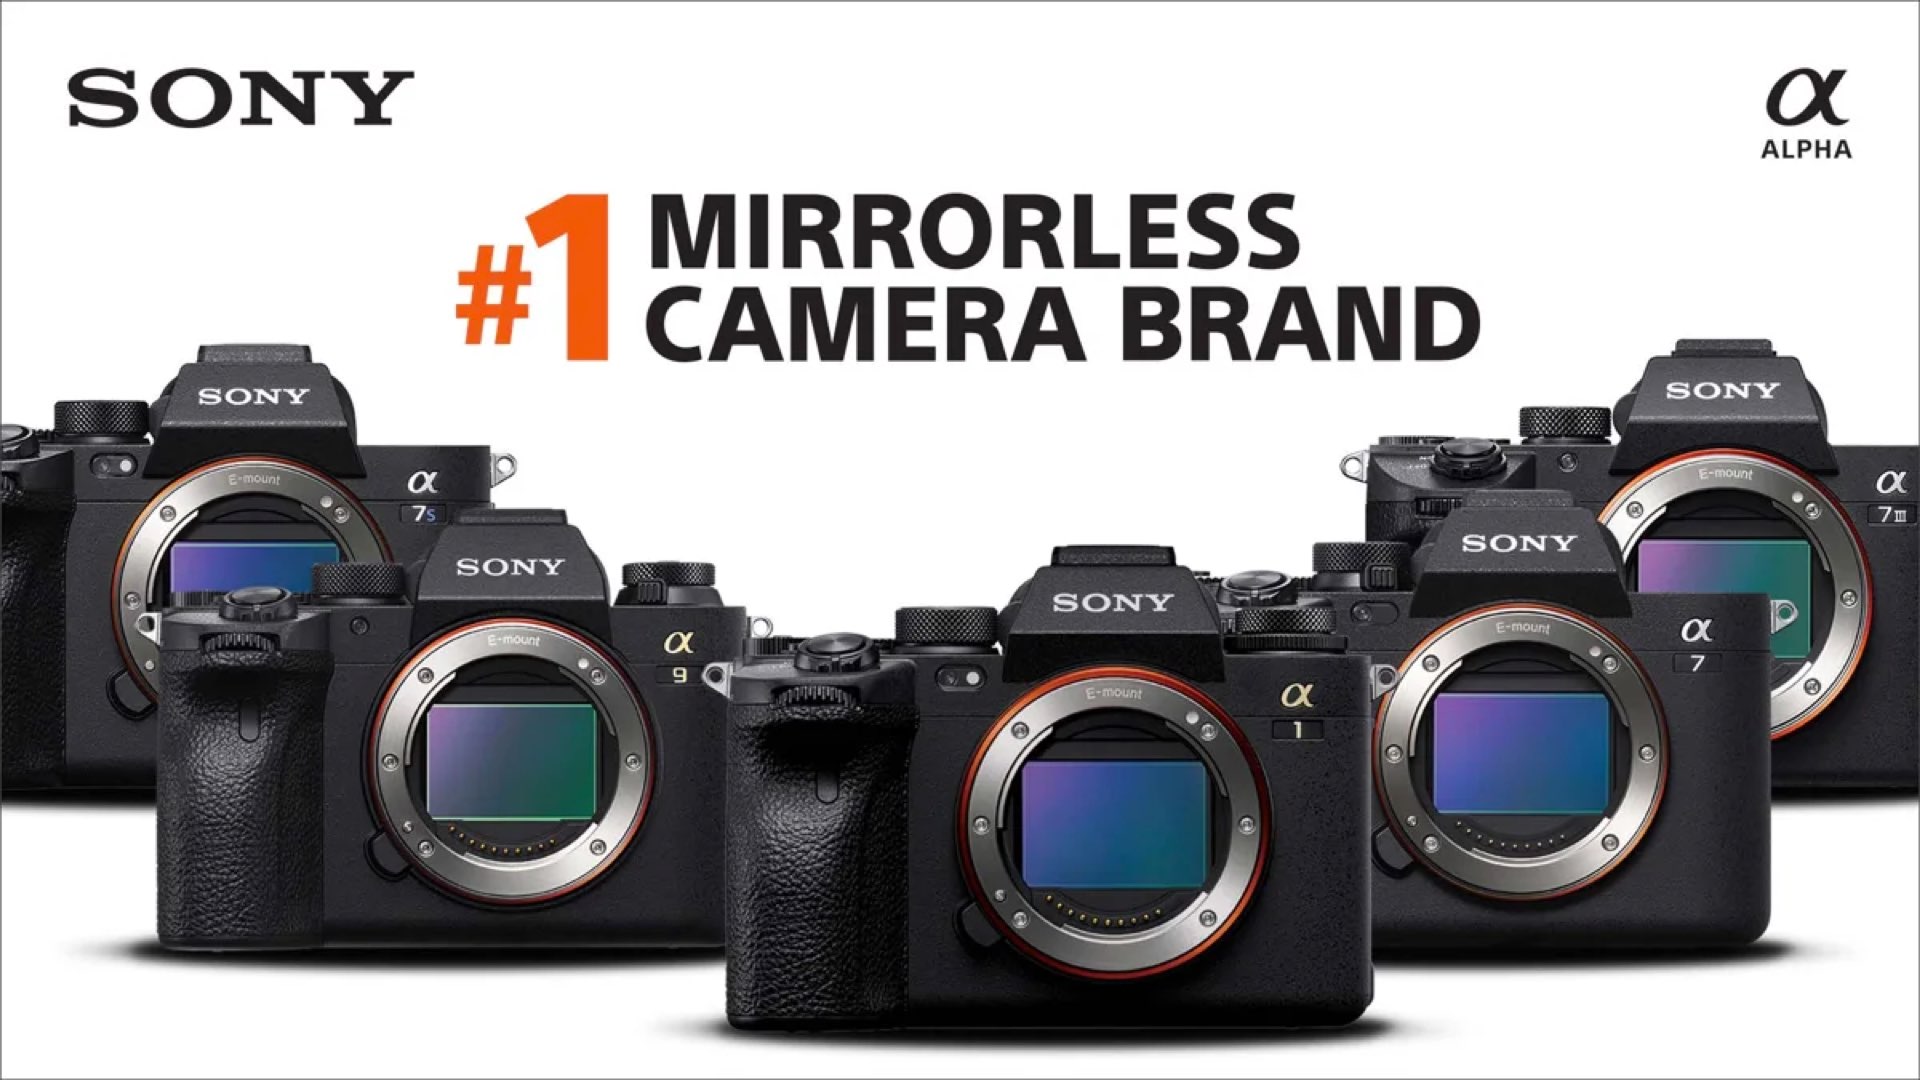 Appareils photo hybrides plein format de Sony : n° 1 de la marque d'appareils photo.